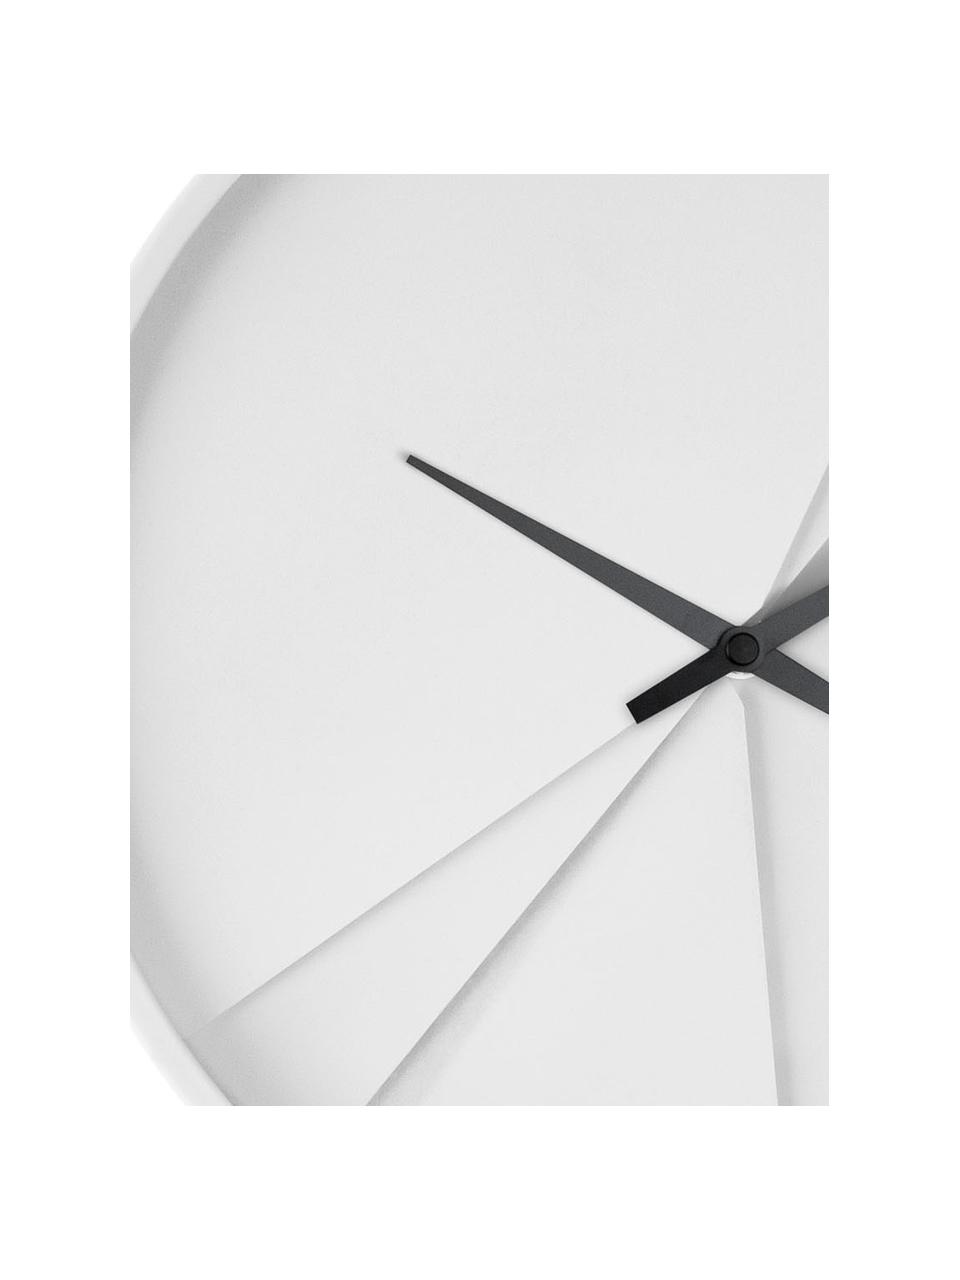 Nástěnné hodiny Layered Lines, Bílá, černá, Ø 30 cm